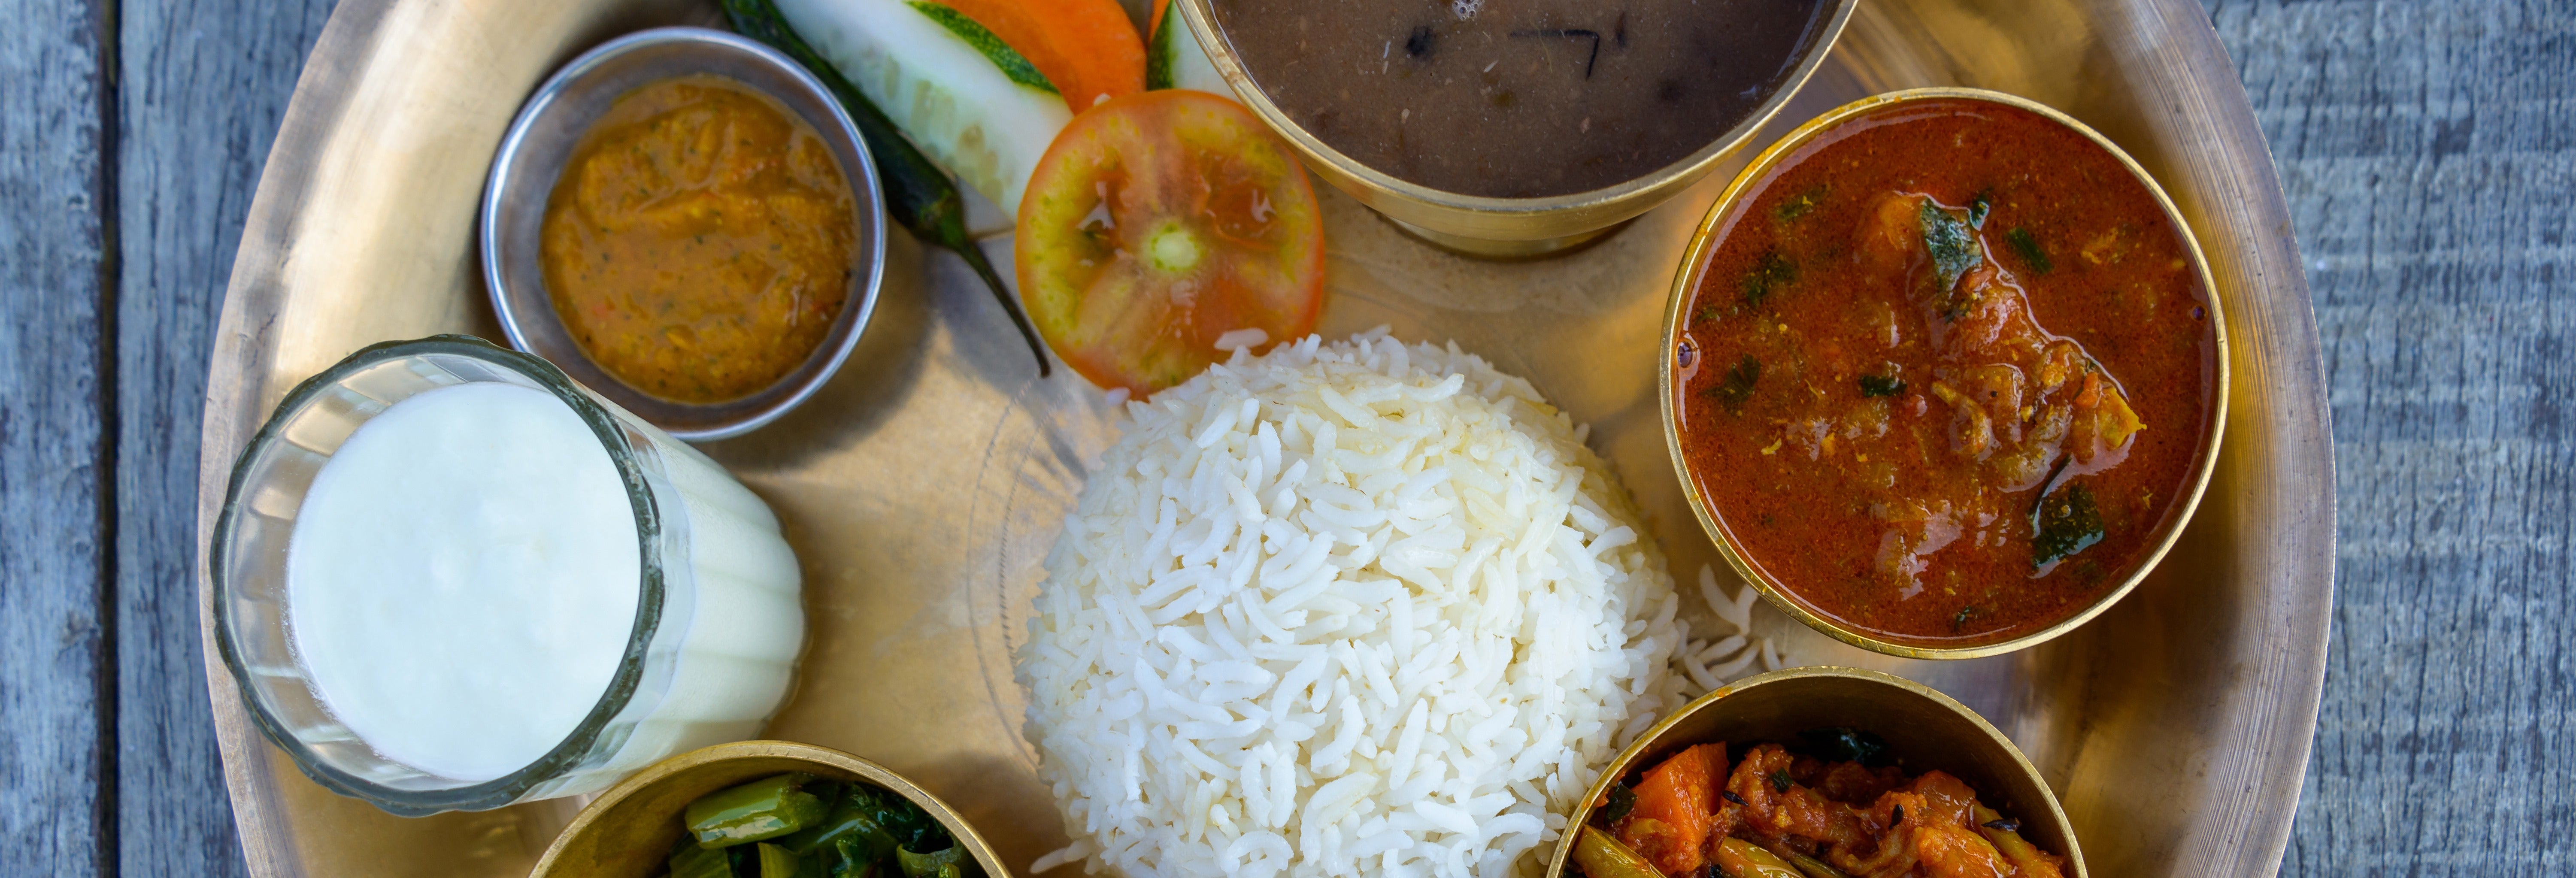 Aula de cozinha privada e almoço com uma família nepalesa